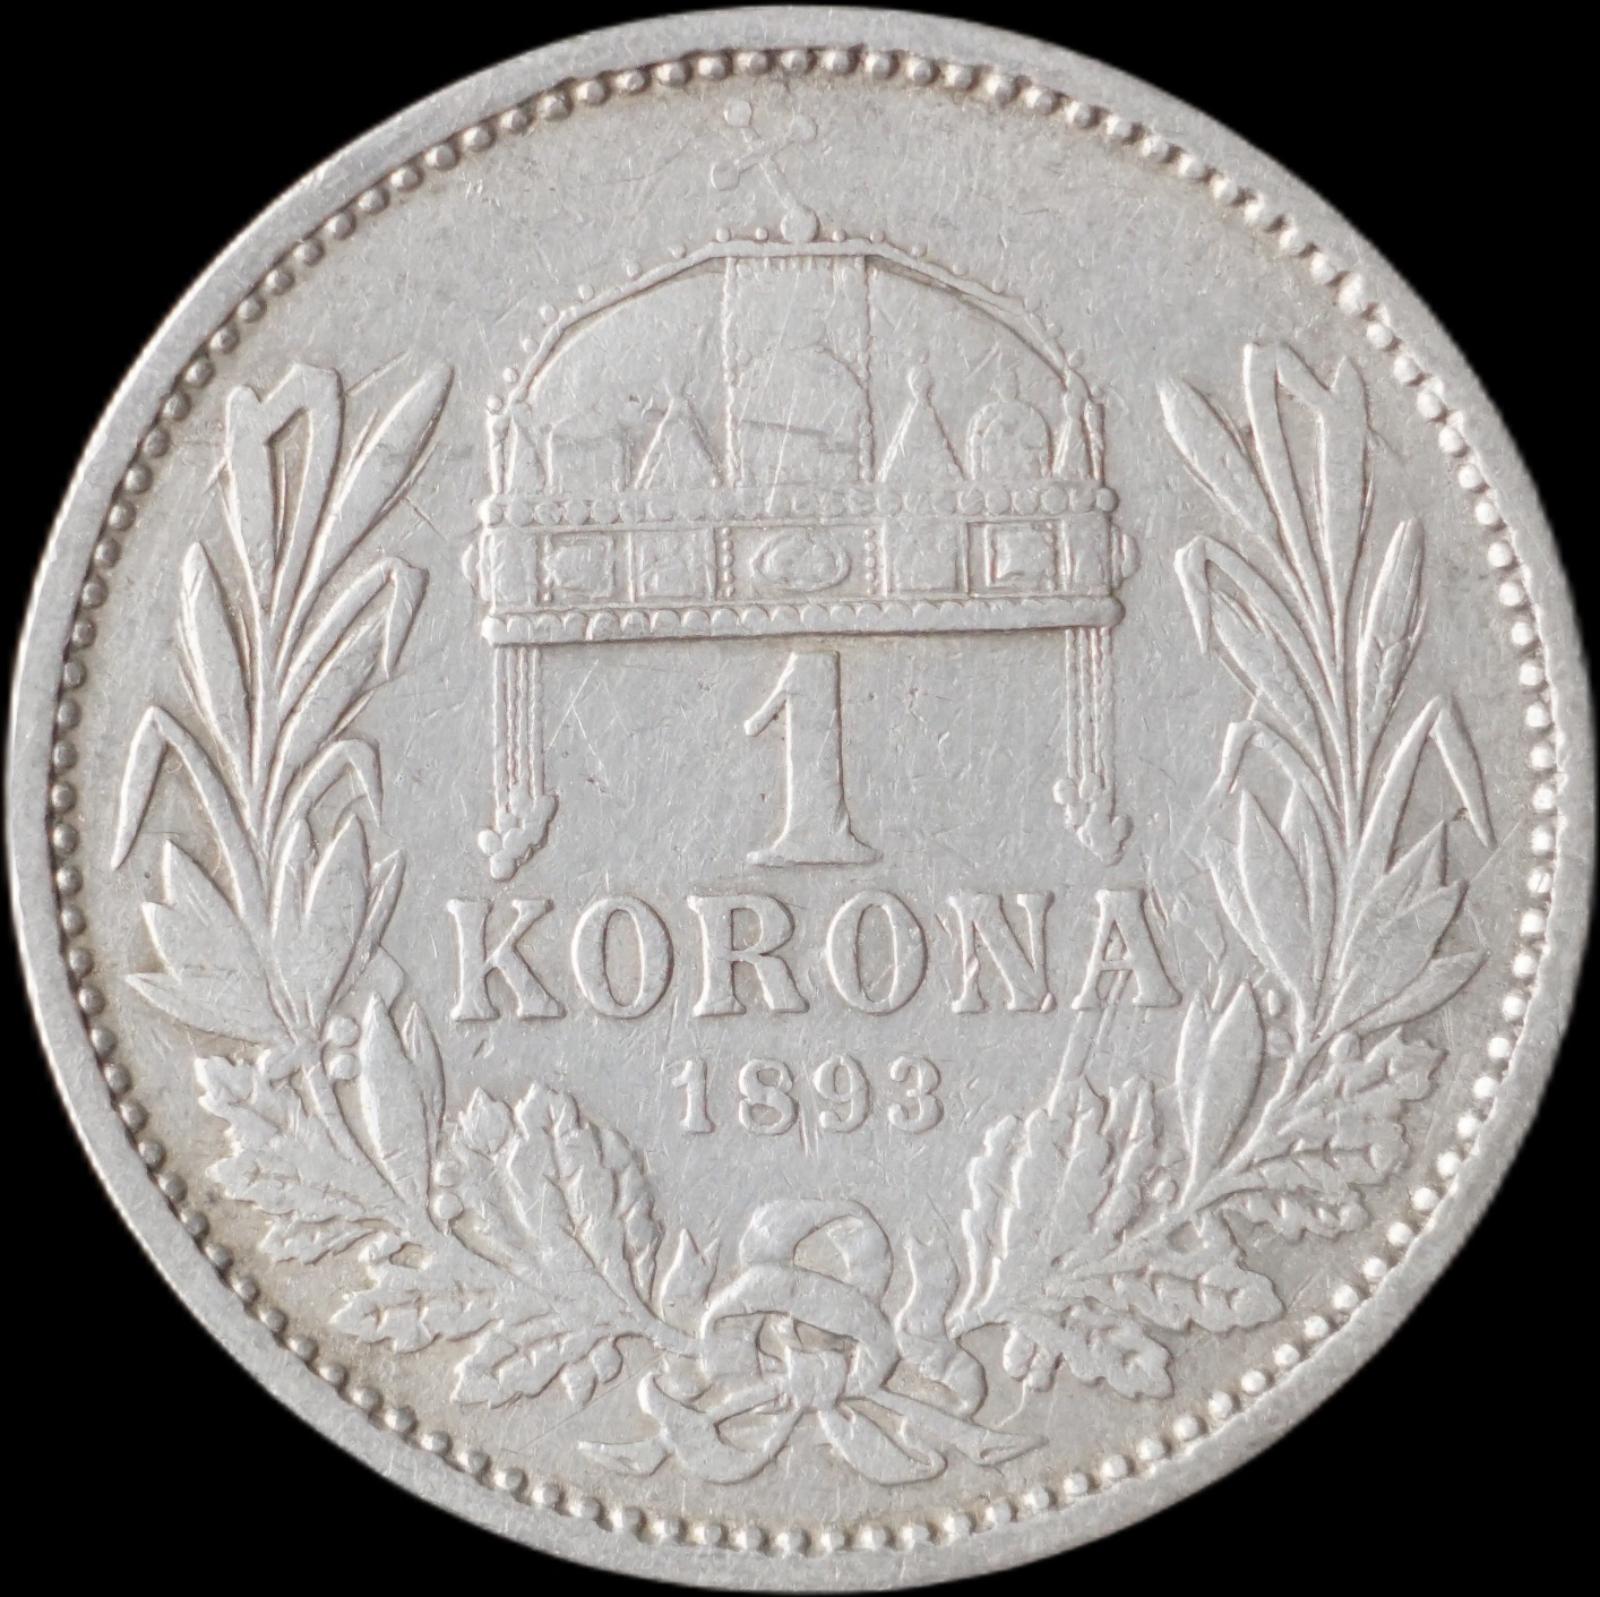 Rakúsko-Uhorsko - 1 koruna 1893 KB - strieborná minca - Numizmatika